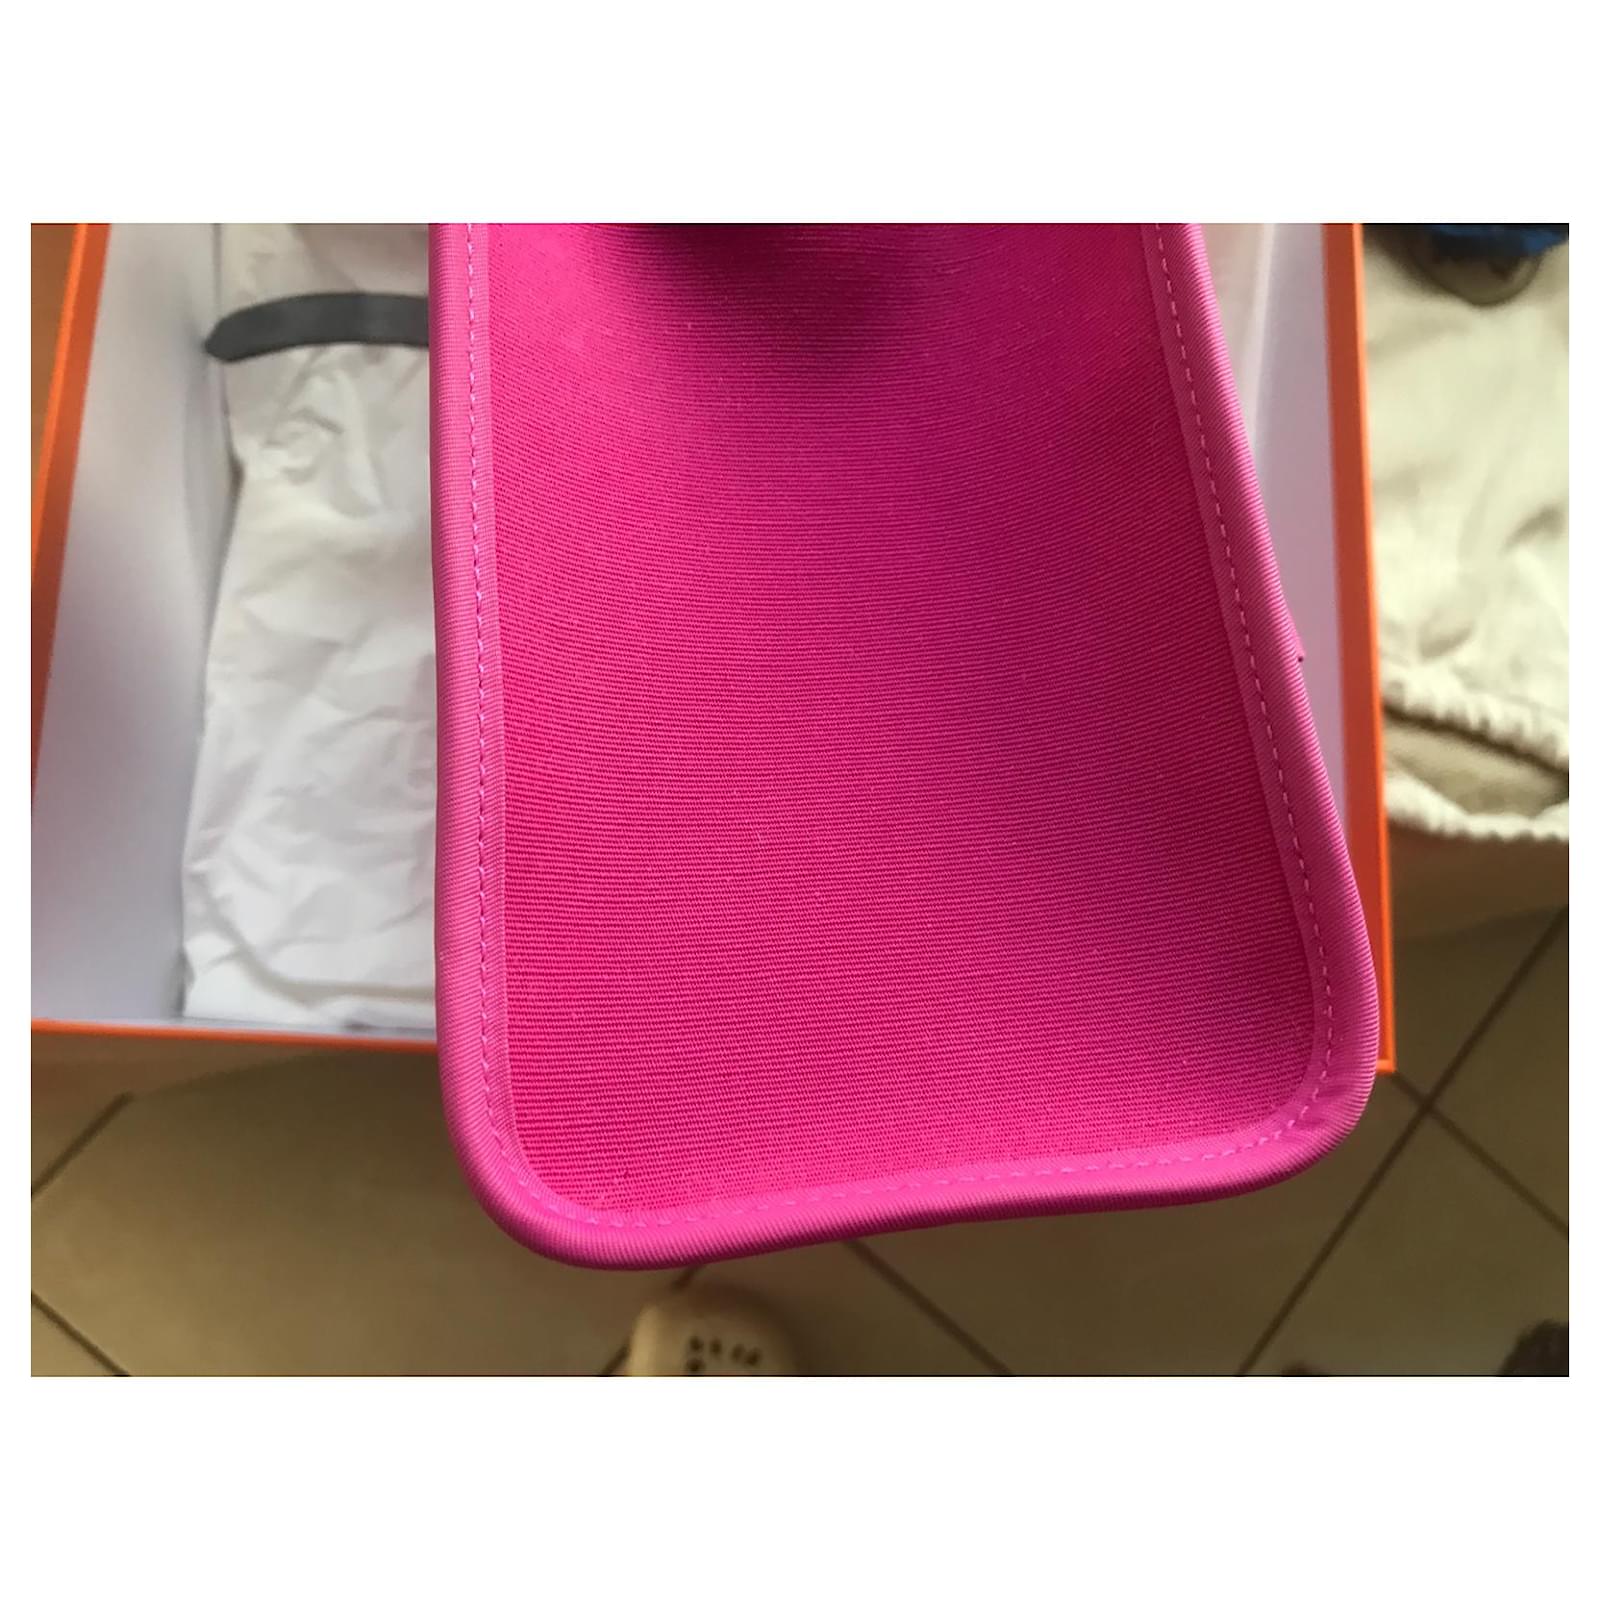 Hermès Herbag Handbag in Pink Fabric – Fancy Lux